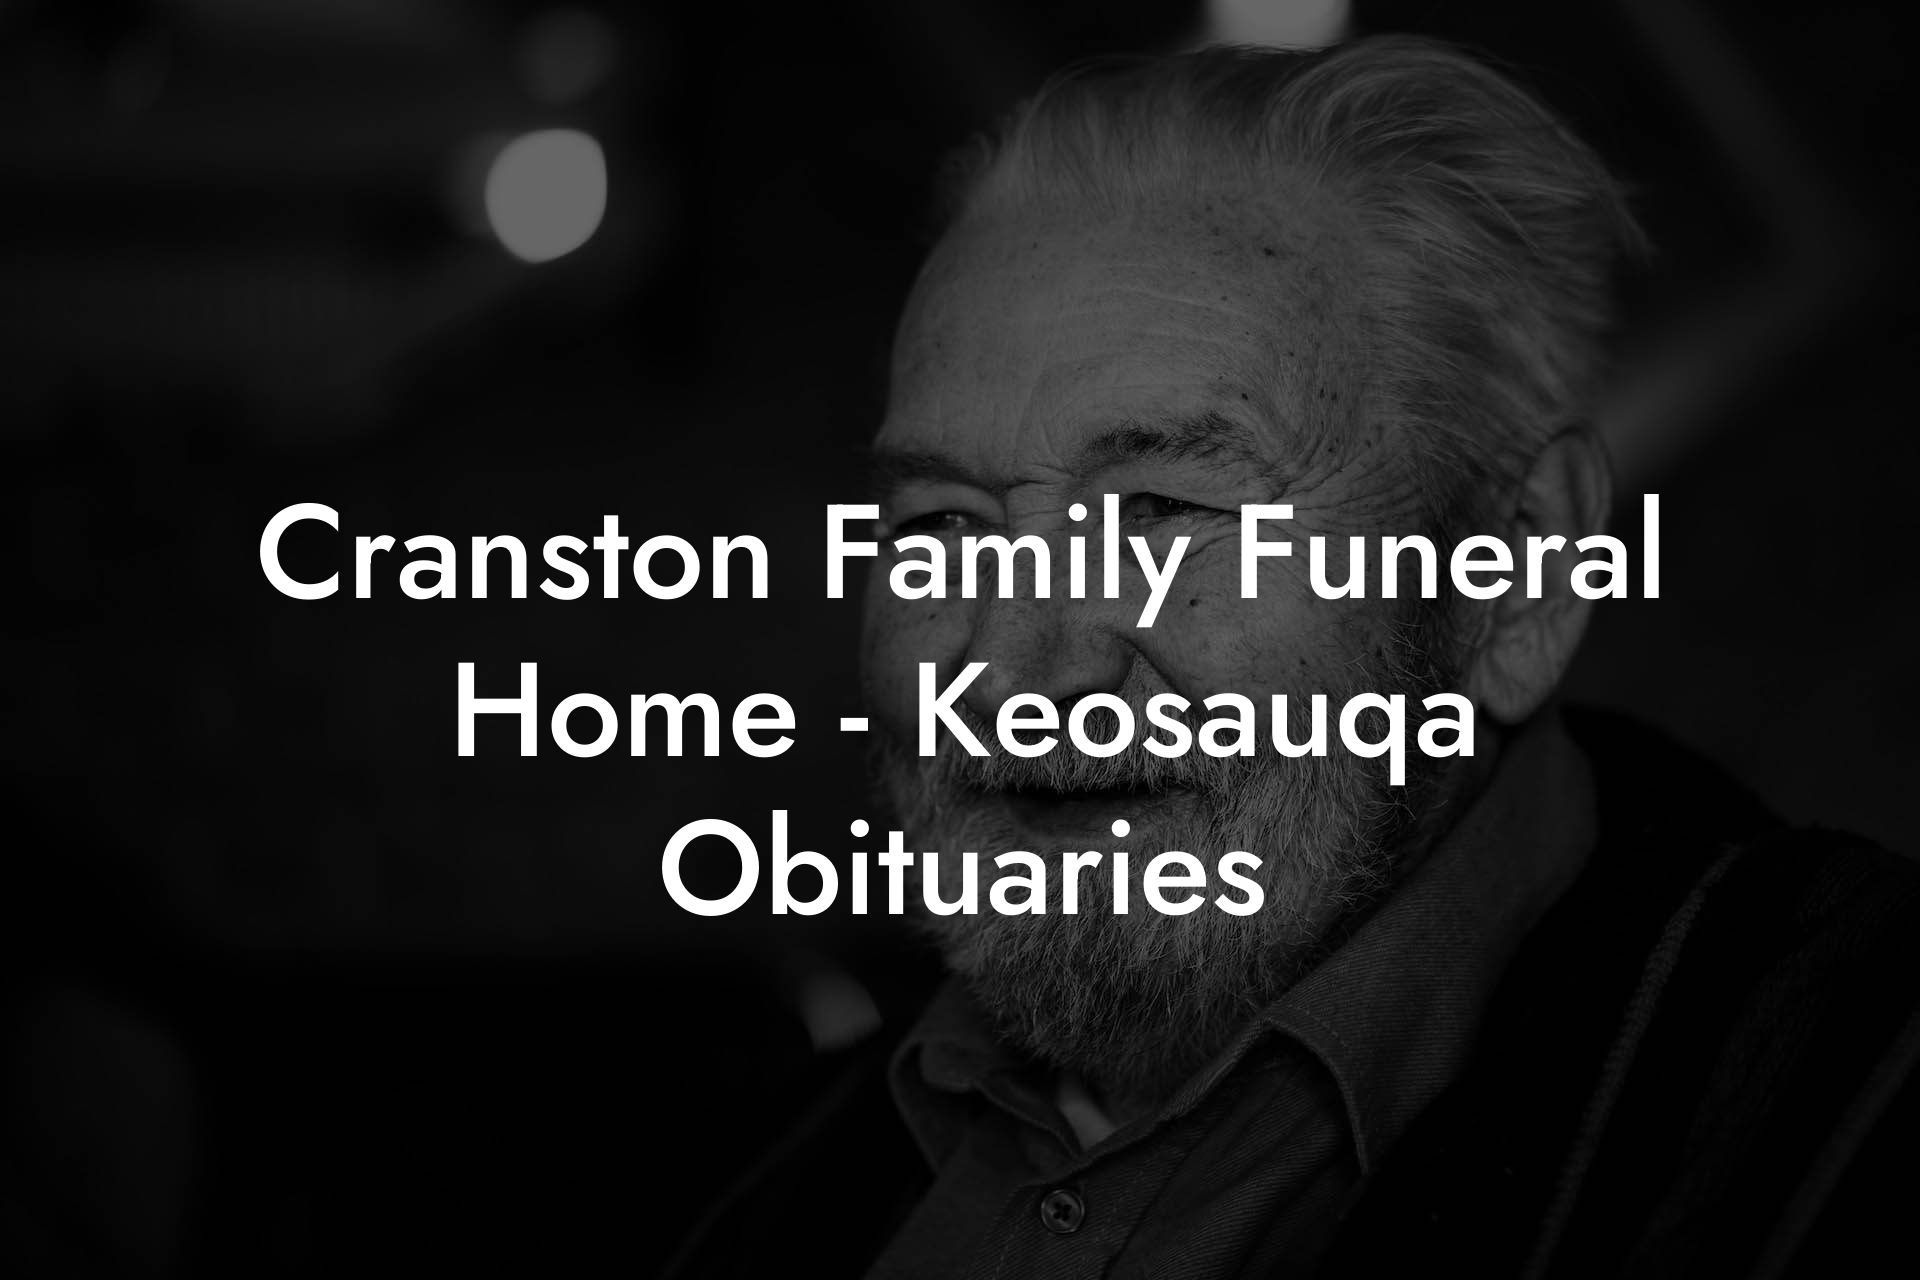 Cranston Family Funeral Home - Keosauqa Obituaries